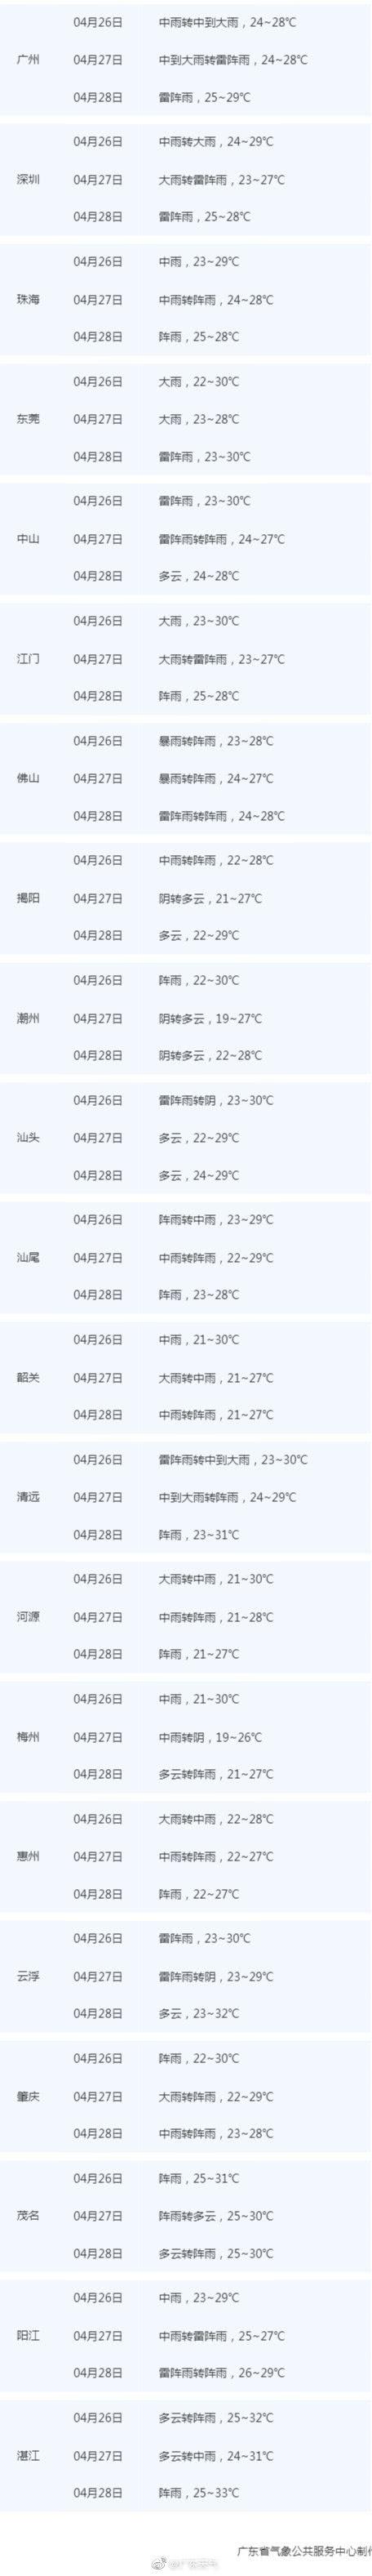 广东未来3天雨水又趋活跃 五一前多地暴雨局地有冰雹